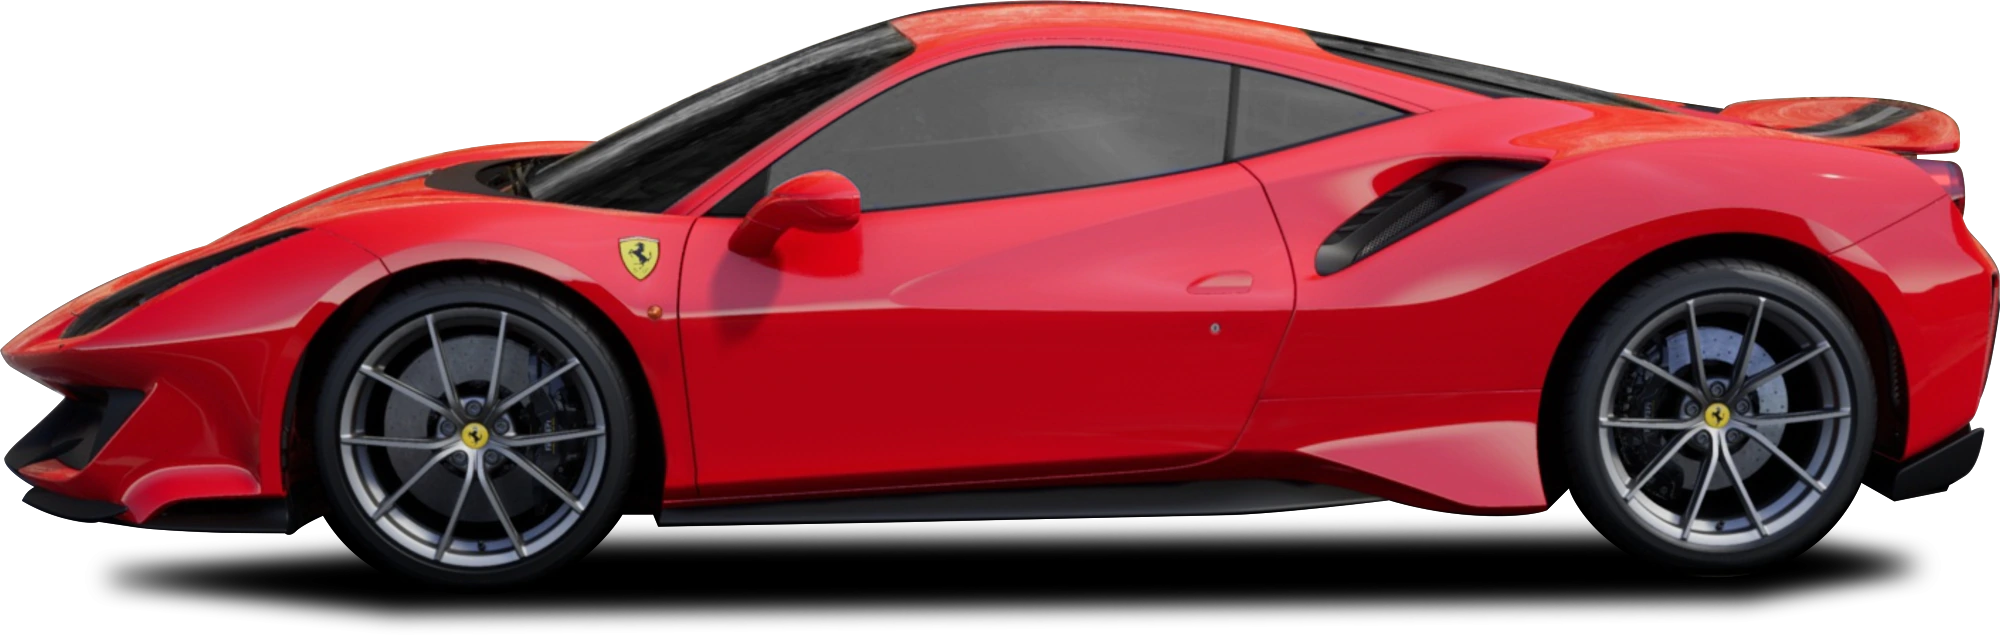 Imagen Transparente roja Ferrari GTC4lusso